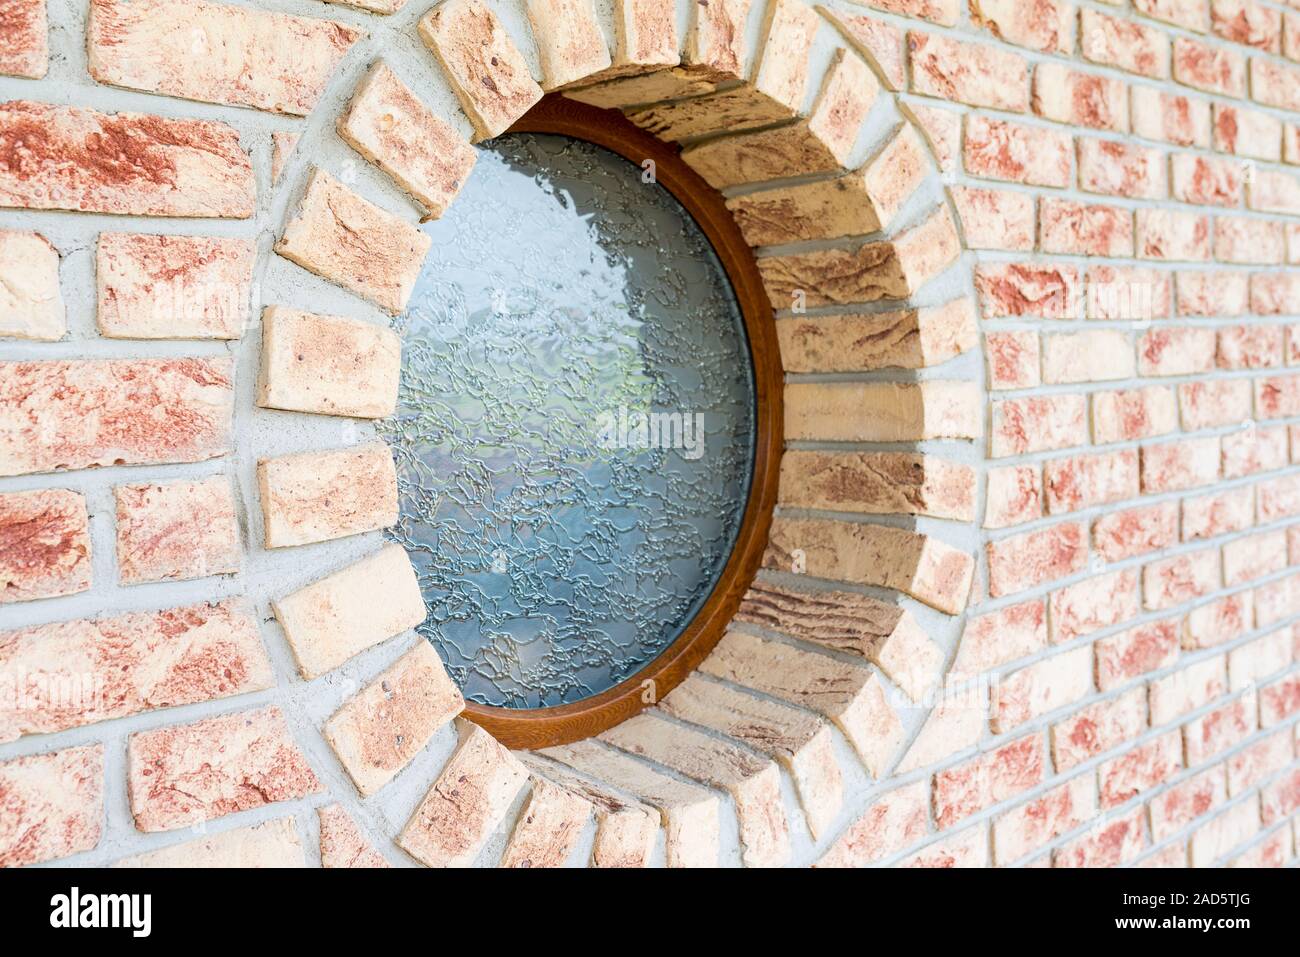 Runde Fenster auf Mauer - geringe Tiefenschärfe - Konzentrieren Sie sich auf die engeren Bogen des Fensters Stockfoto